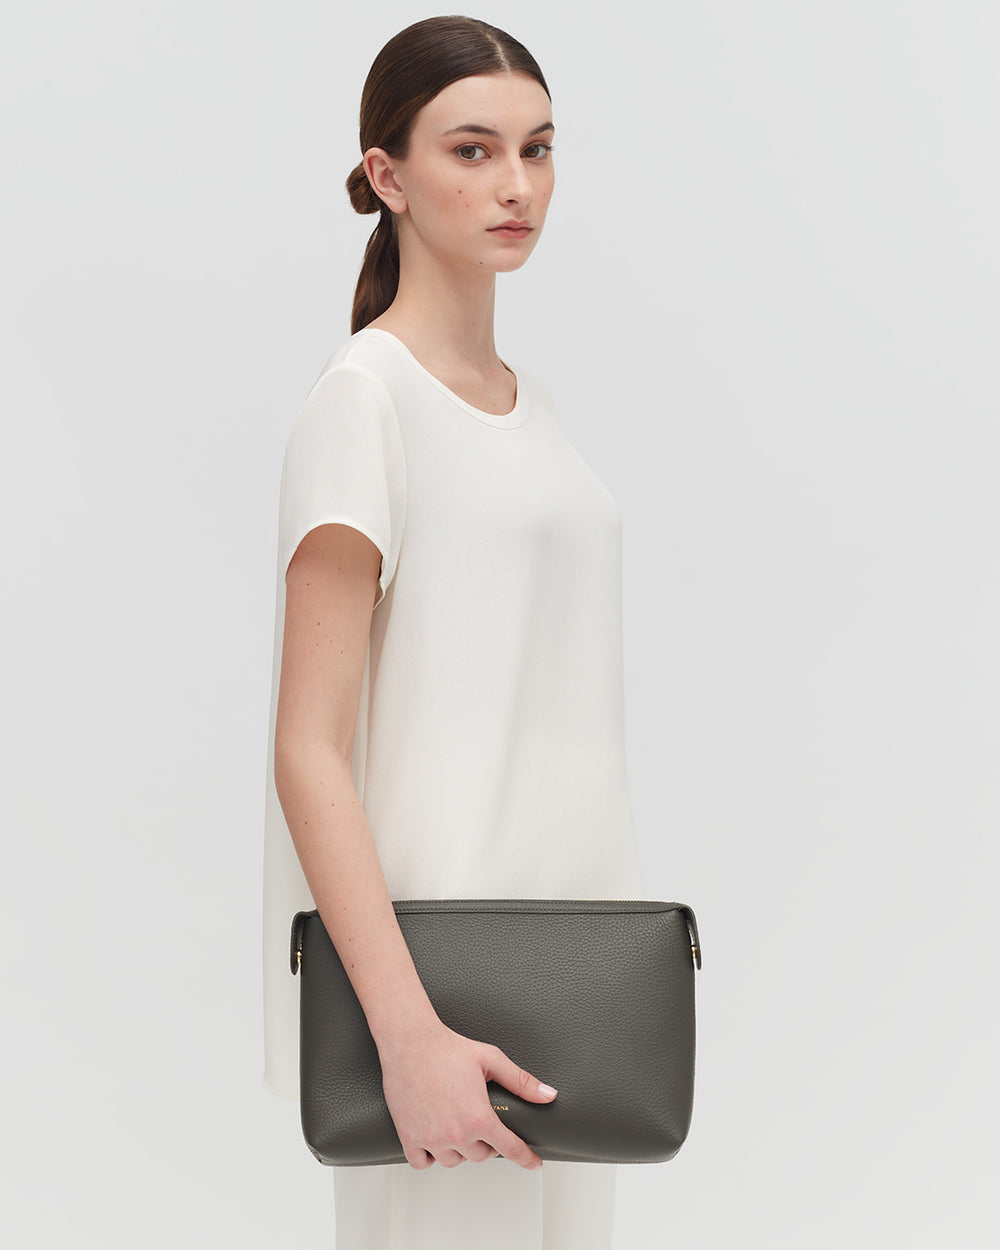 Woman standing with a handbag